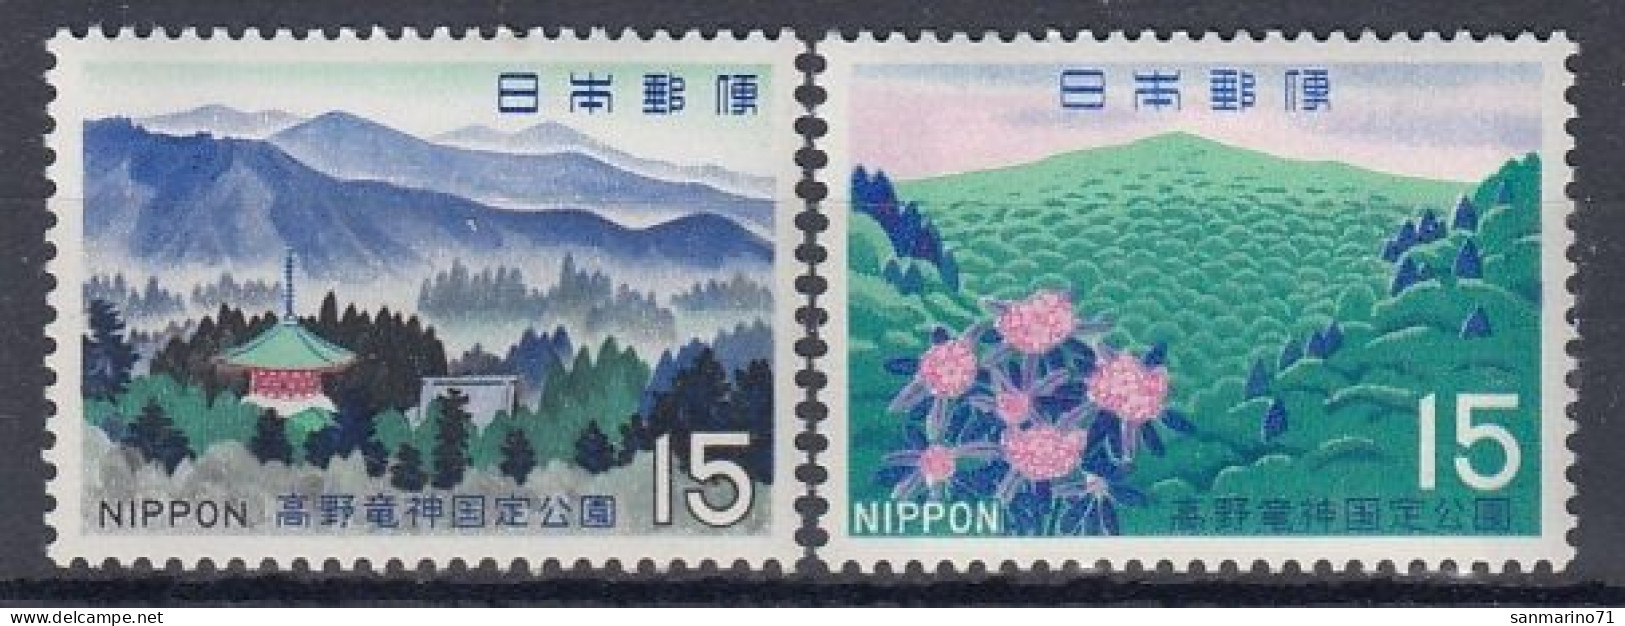 JAPAN 1035-1036,unused - Mountains